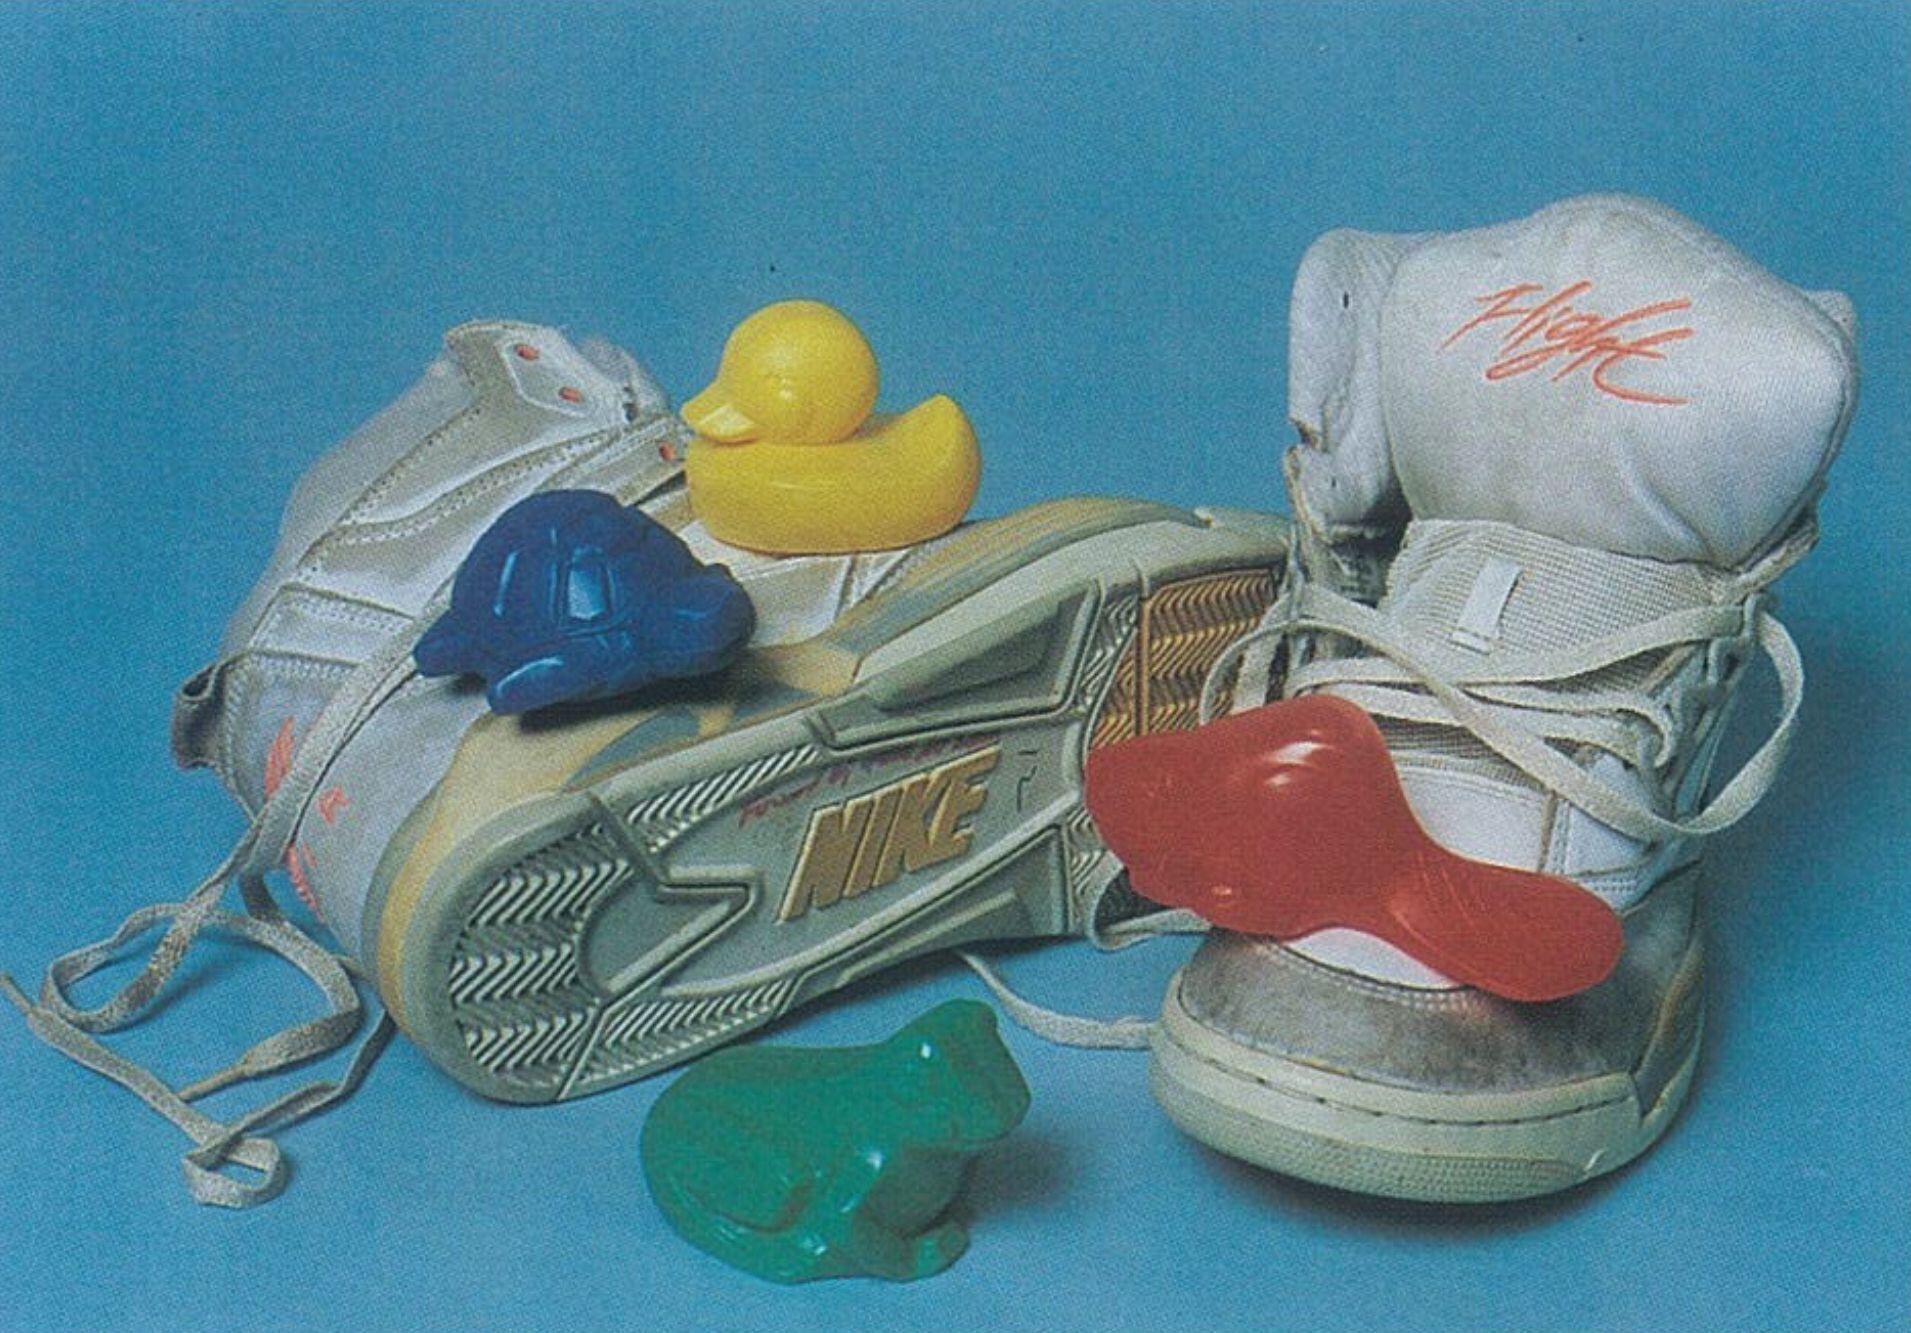 Juguetes de bañera del vertido de 1992, junto a unas zapatillas de un accidente anterior.